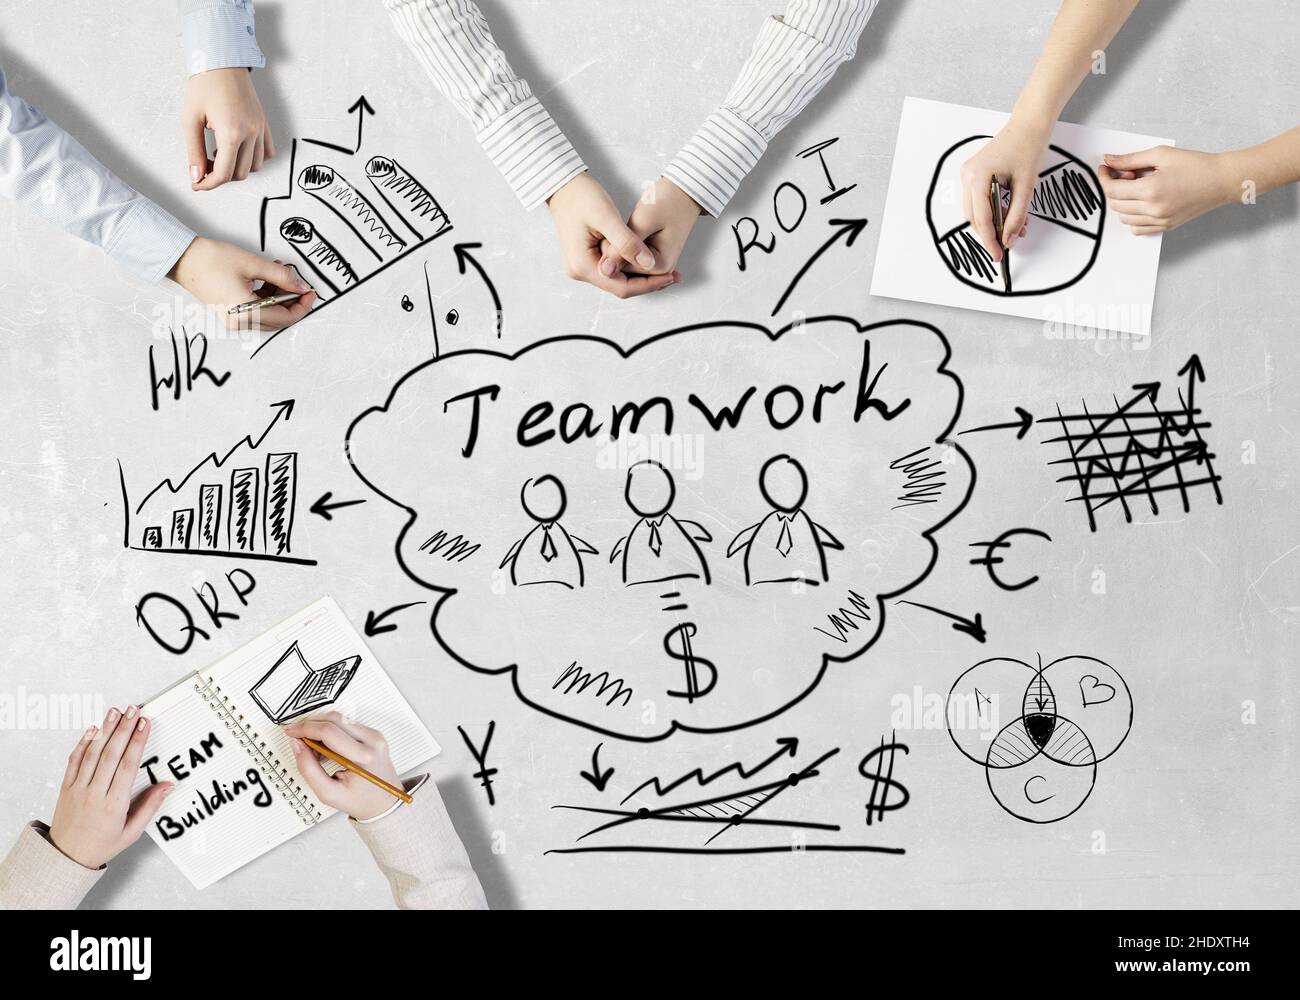 travail d'équipe, coopération, teamworks, collaboration, contribuer,coopérations, partenariat, partenariats Banque D'Images